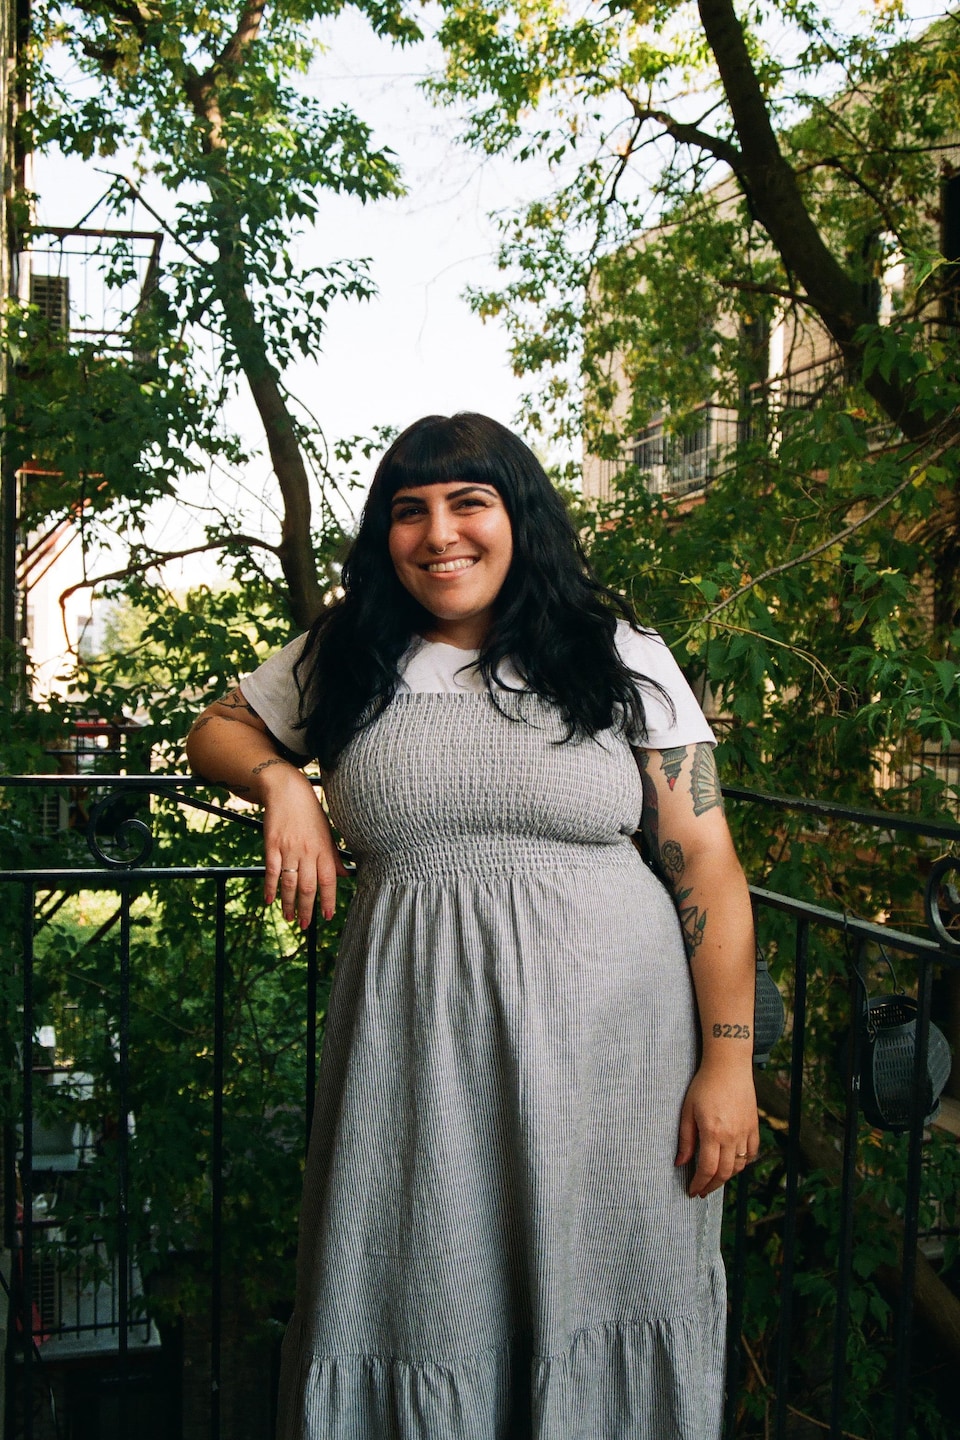 Une femme aux cheveux noirs pose sur un balcon extérieur. Elle est vêtue d'une robe grise et d'un chandail à manches courtes blanc. Elle sourit à pleines dents.